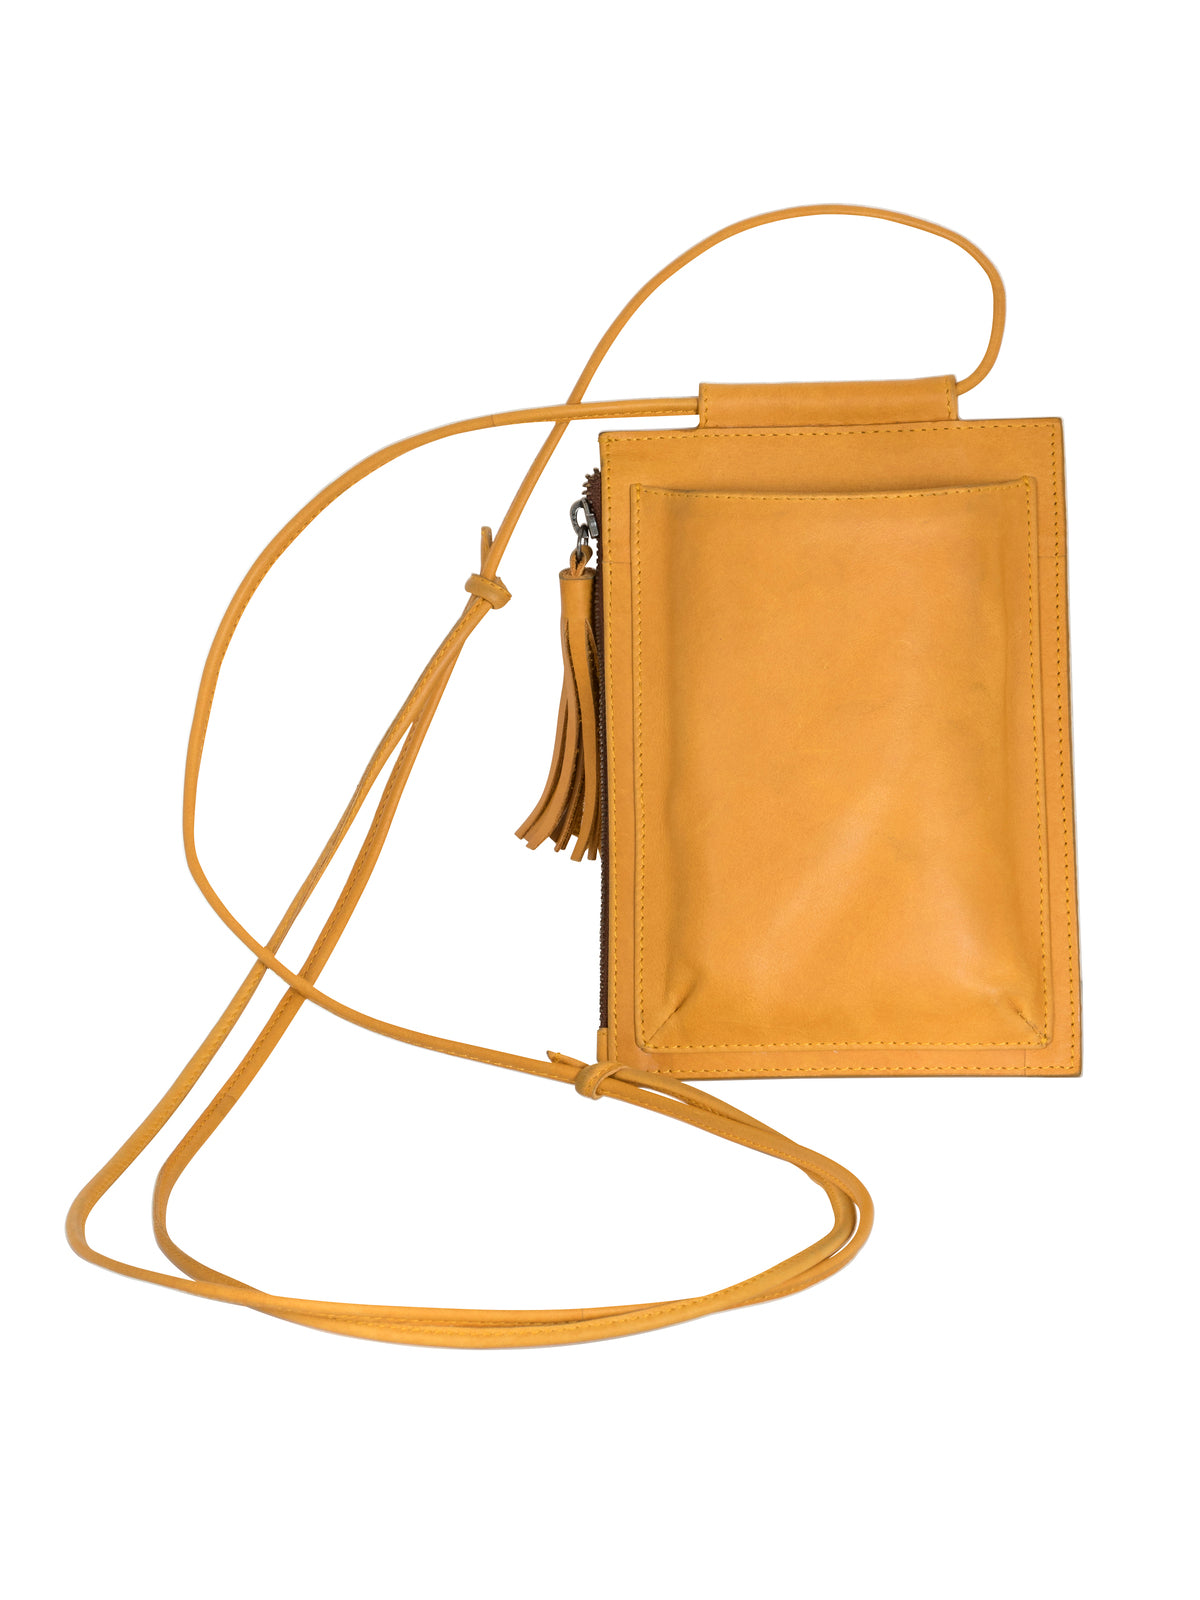 Cellphone sling bag